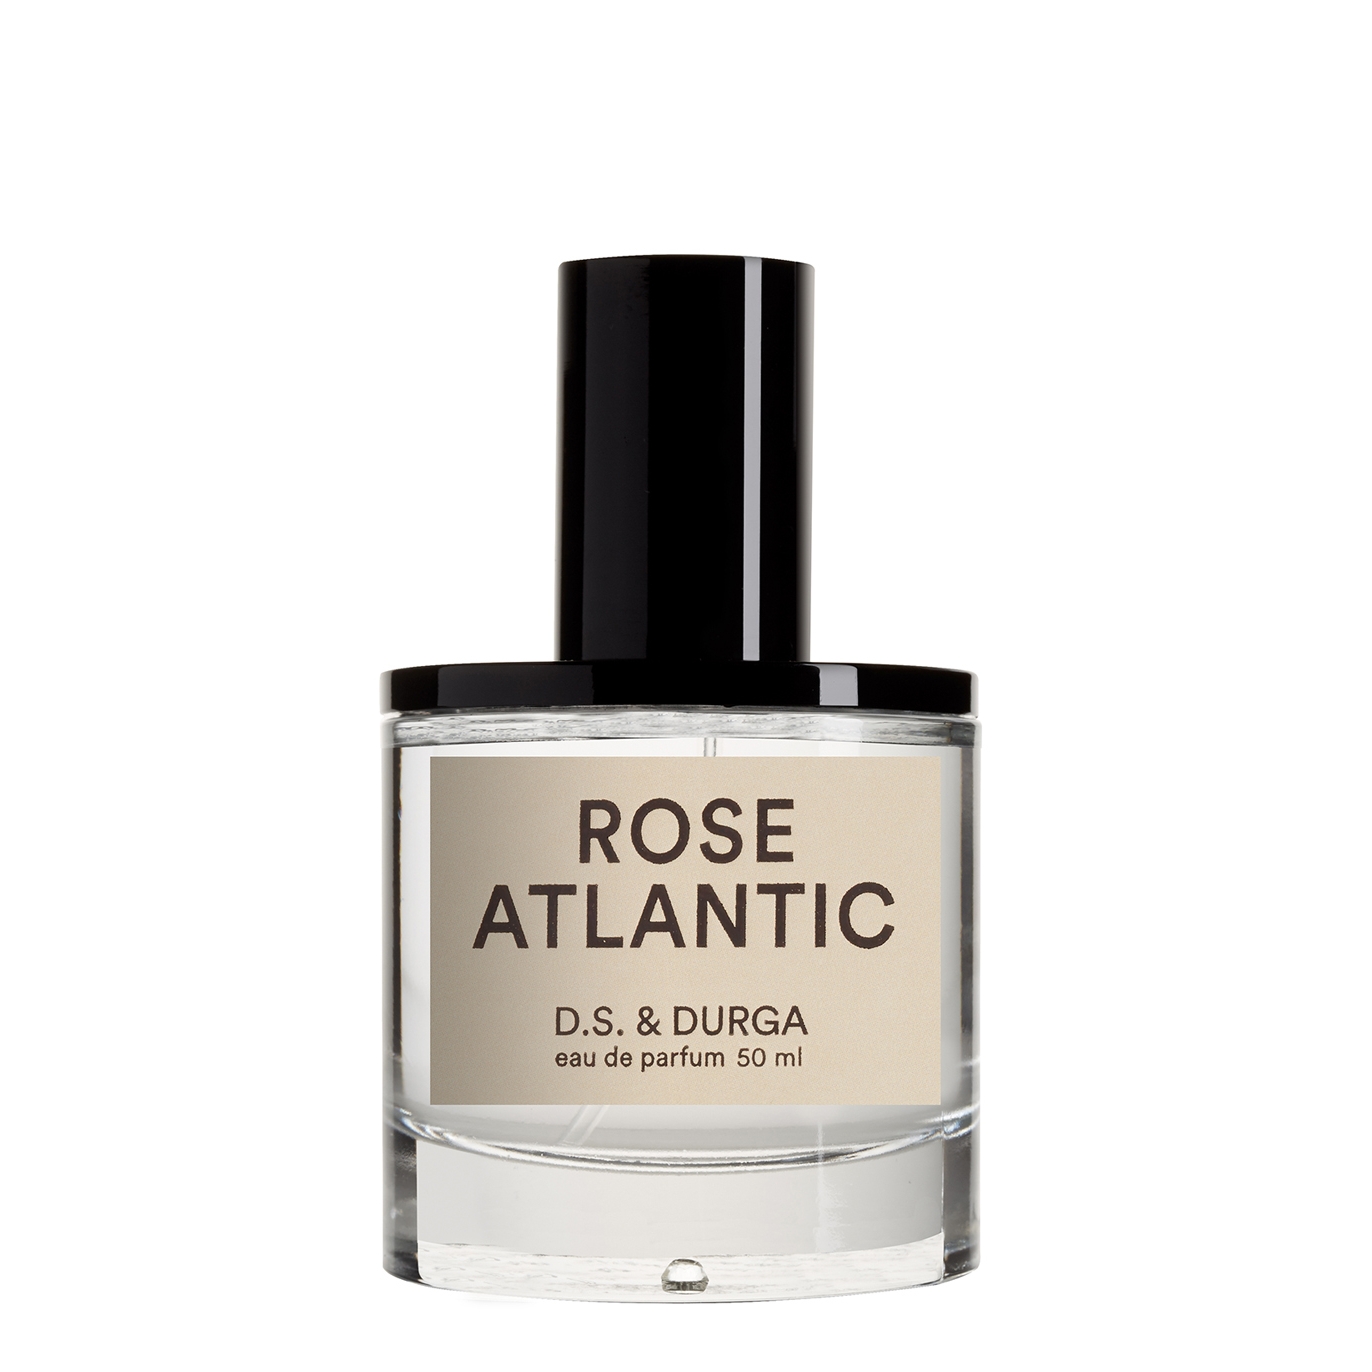 D.S. & Durga Rose Atlantic Eau De Parfum 50ml